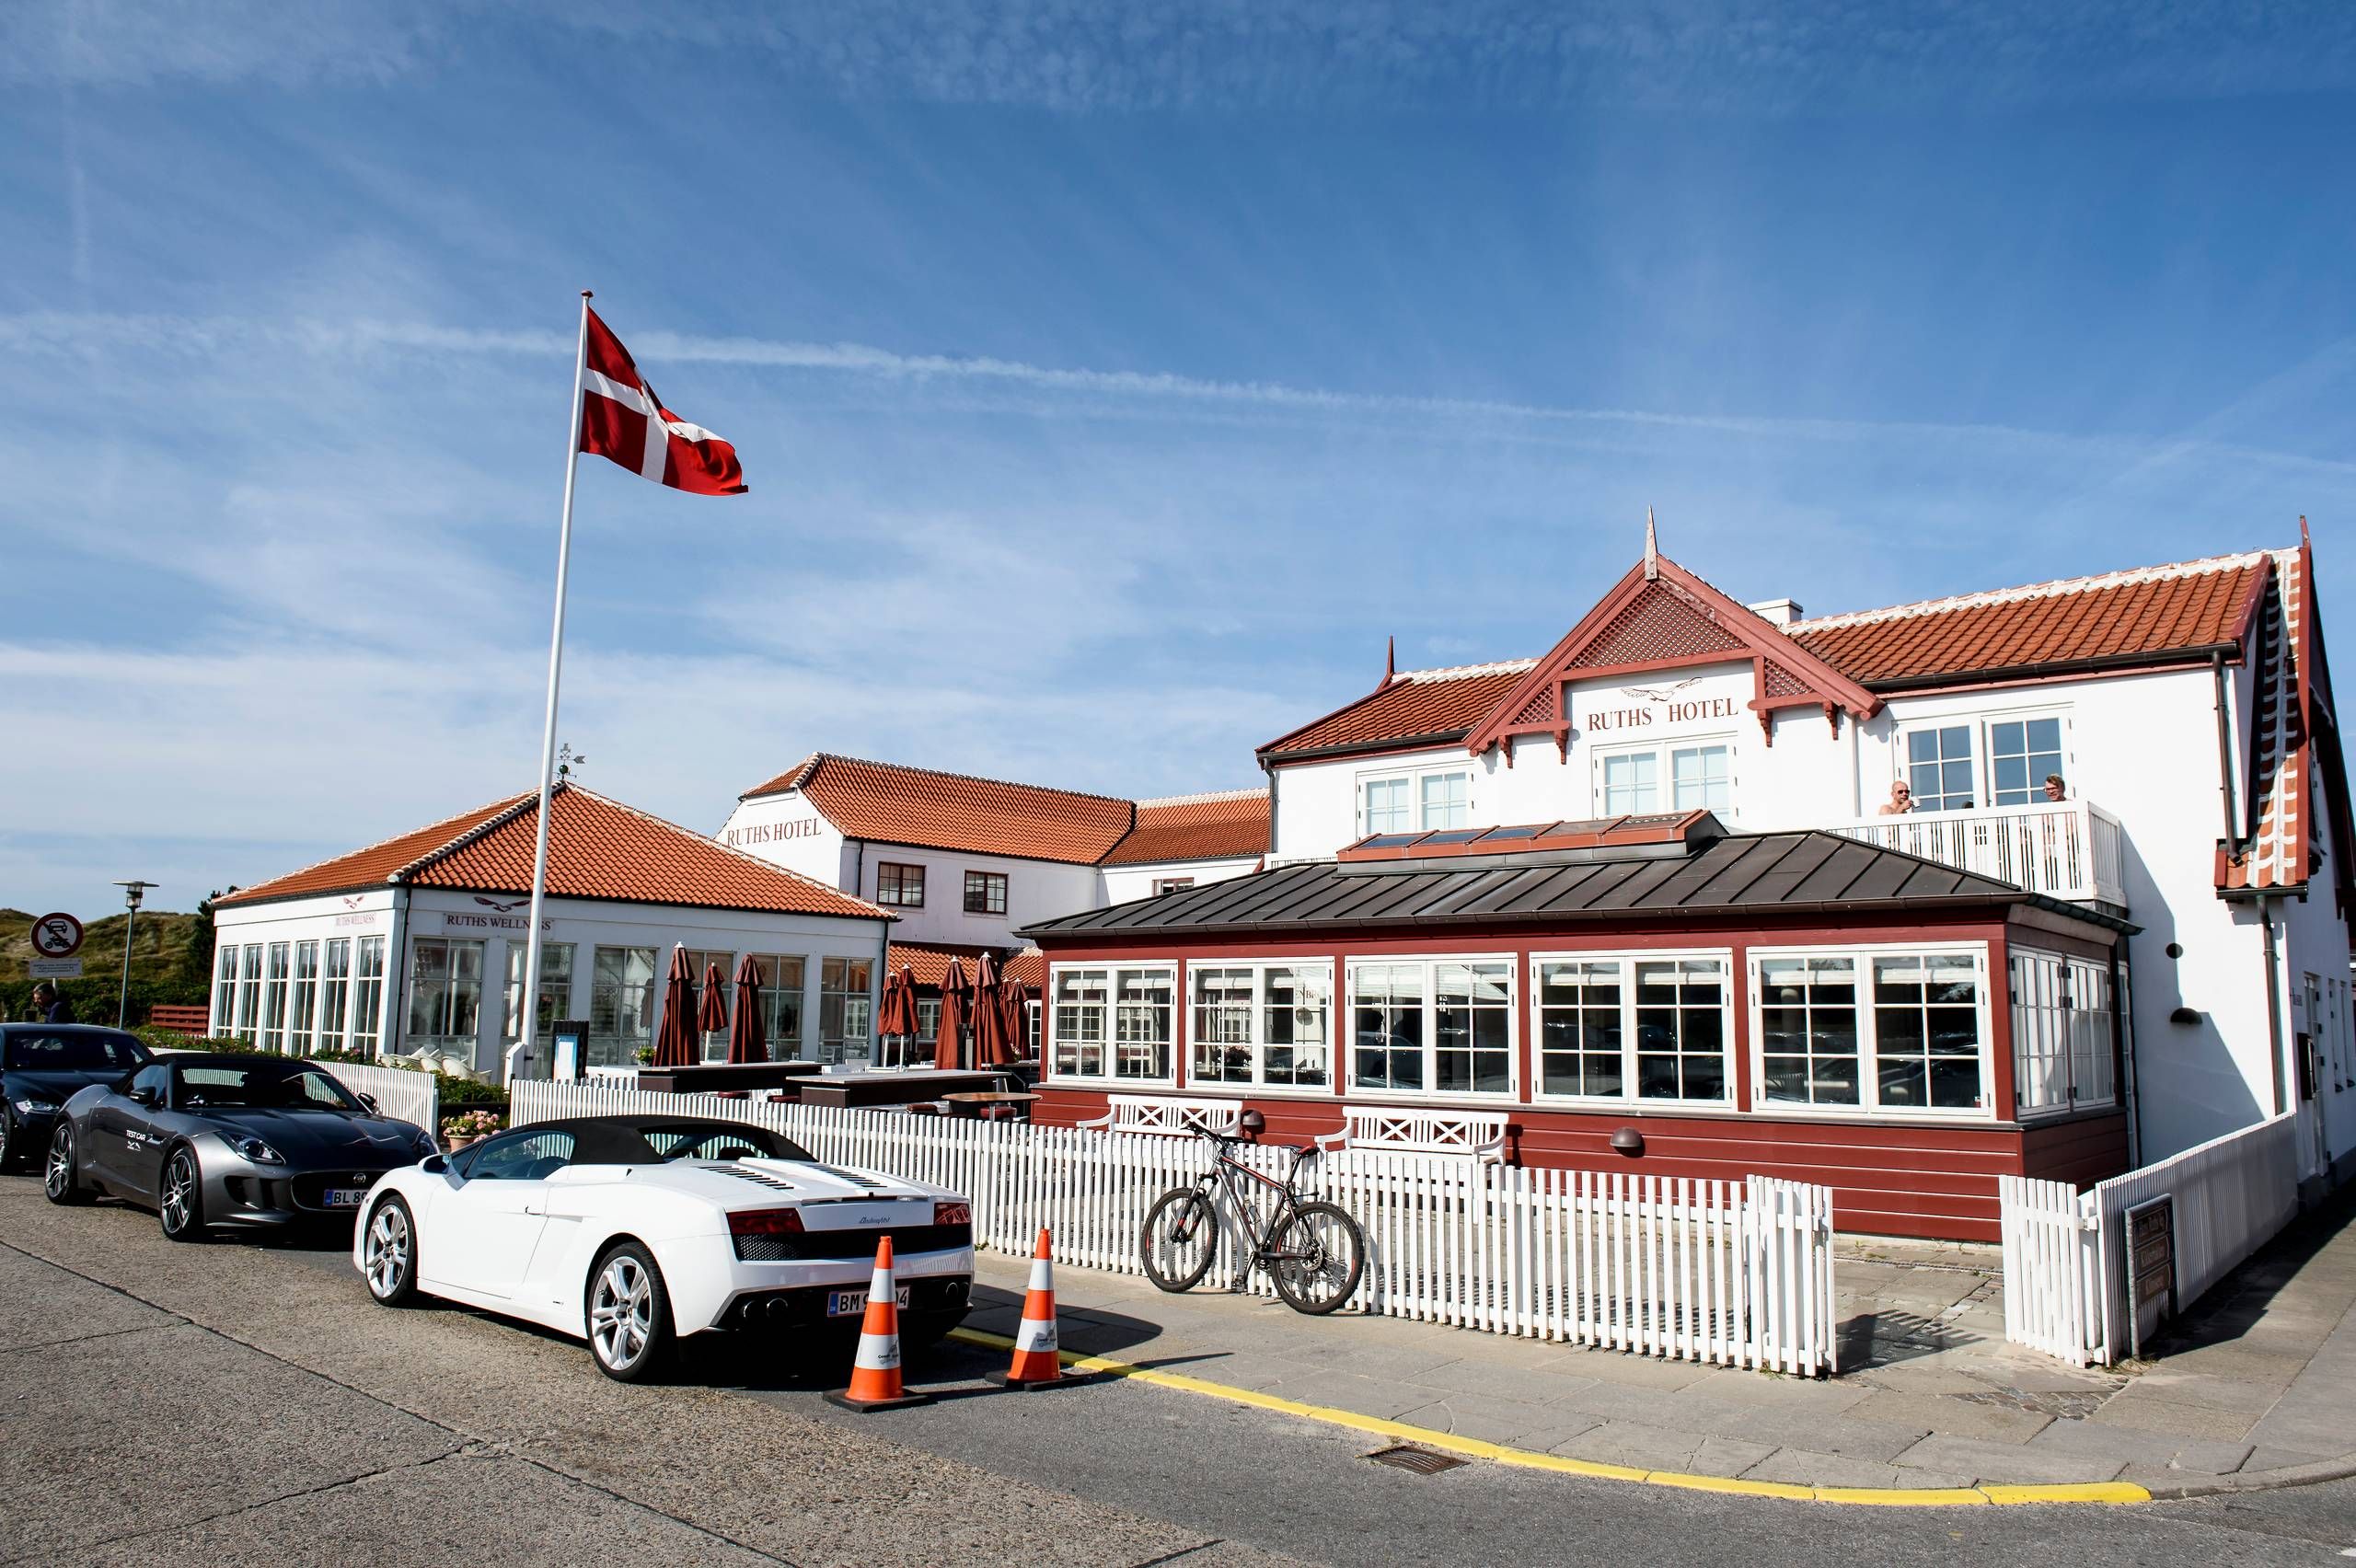 Ruths Hotel i Skagen har blodrøde underskud - tjener hotellet millioner